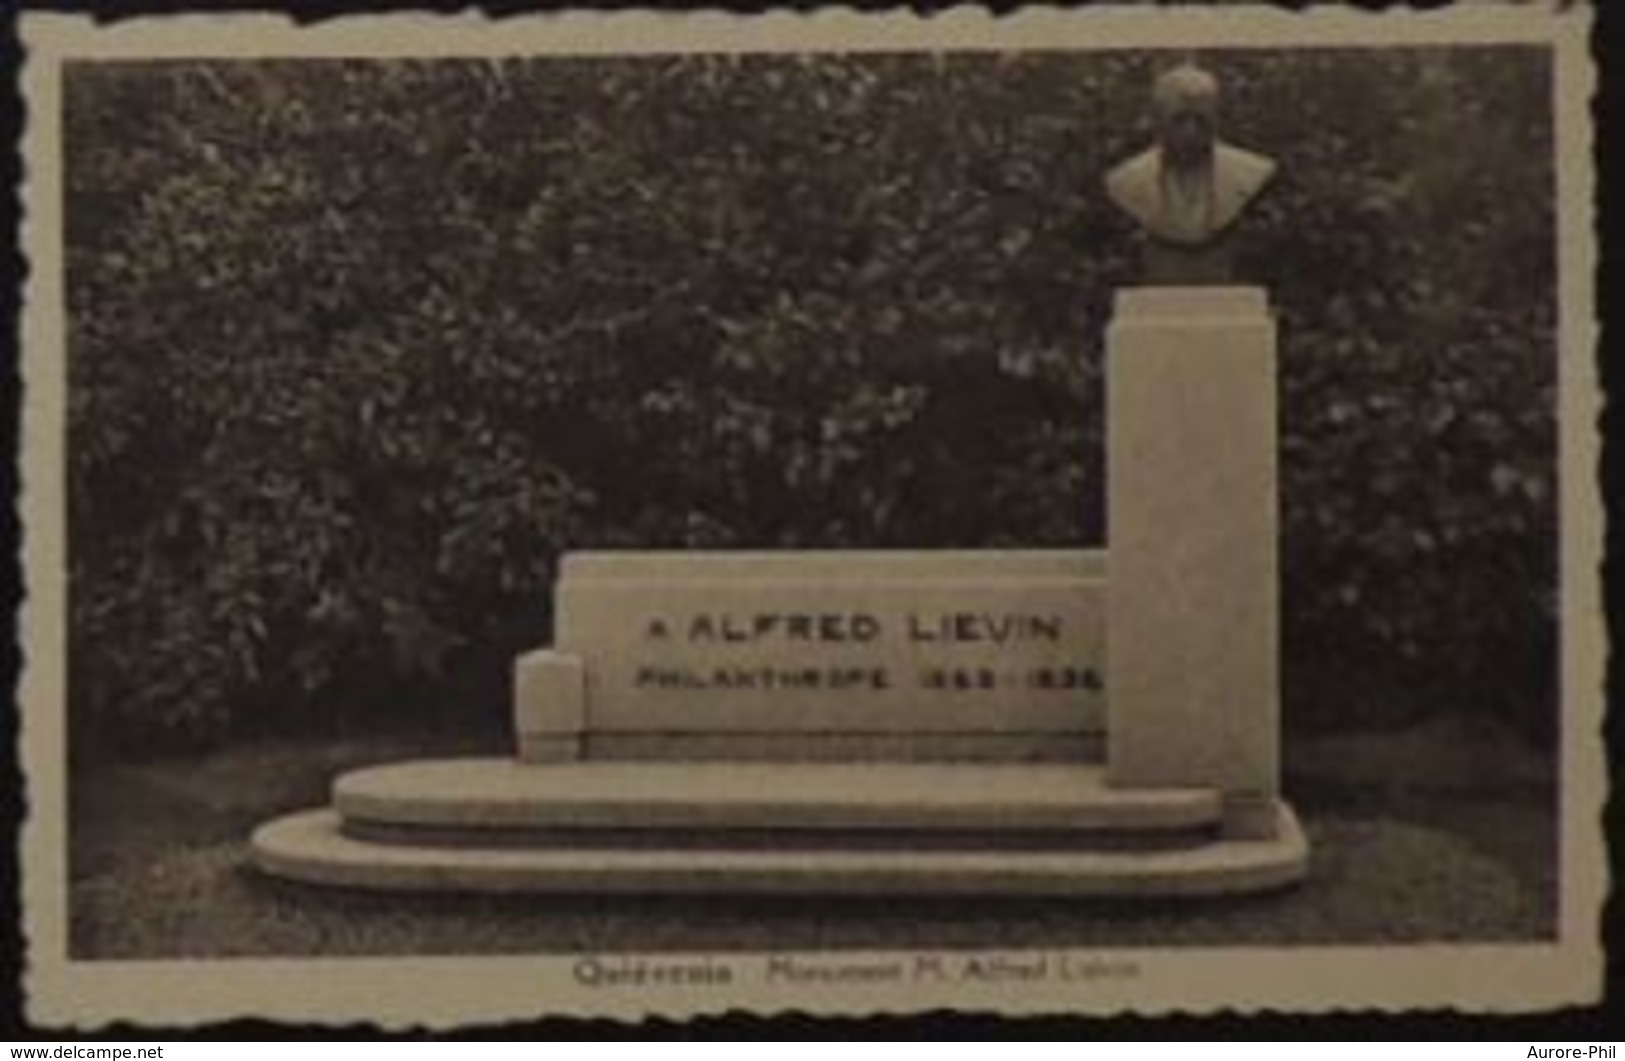 Quiévrain Monument M. Alfred Liévin - Quiévrain